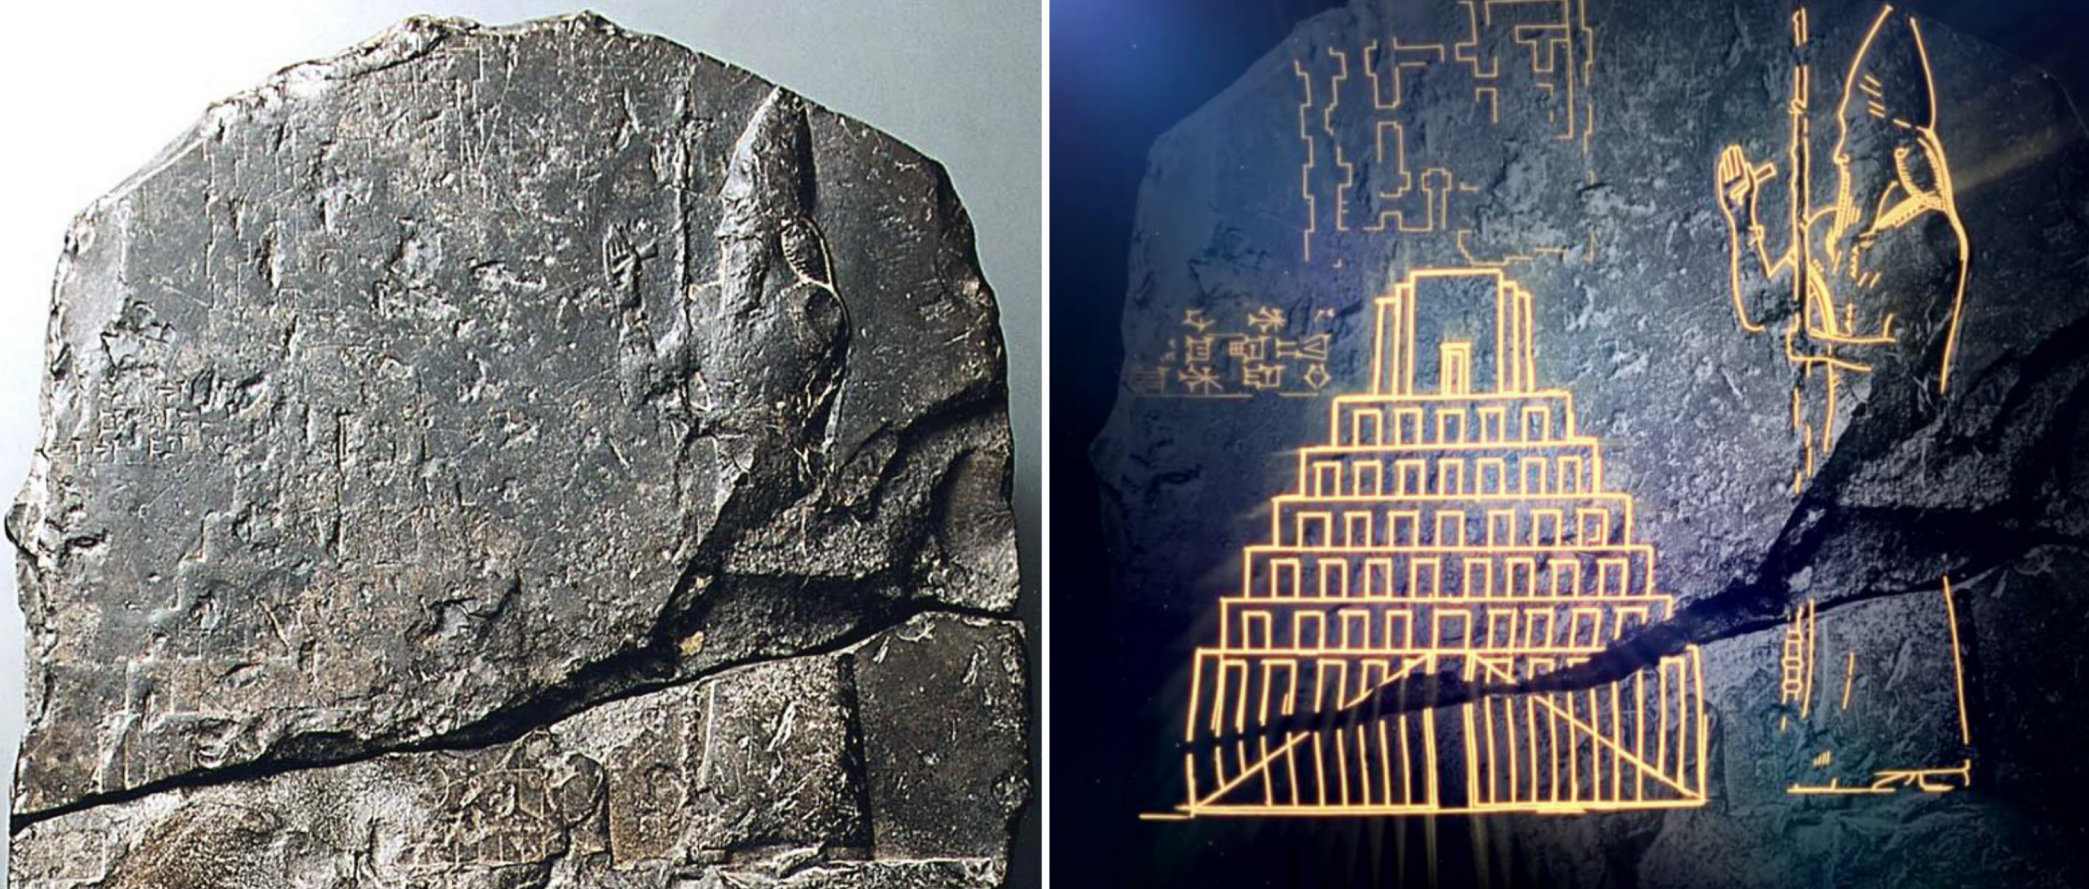 Bằng chứng đầu tiên về Tháp Babel trong Kinh thánh được phát hiện 3